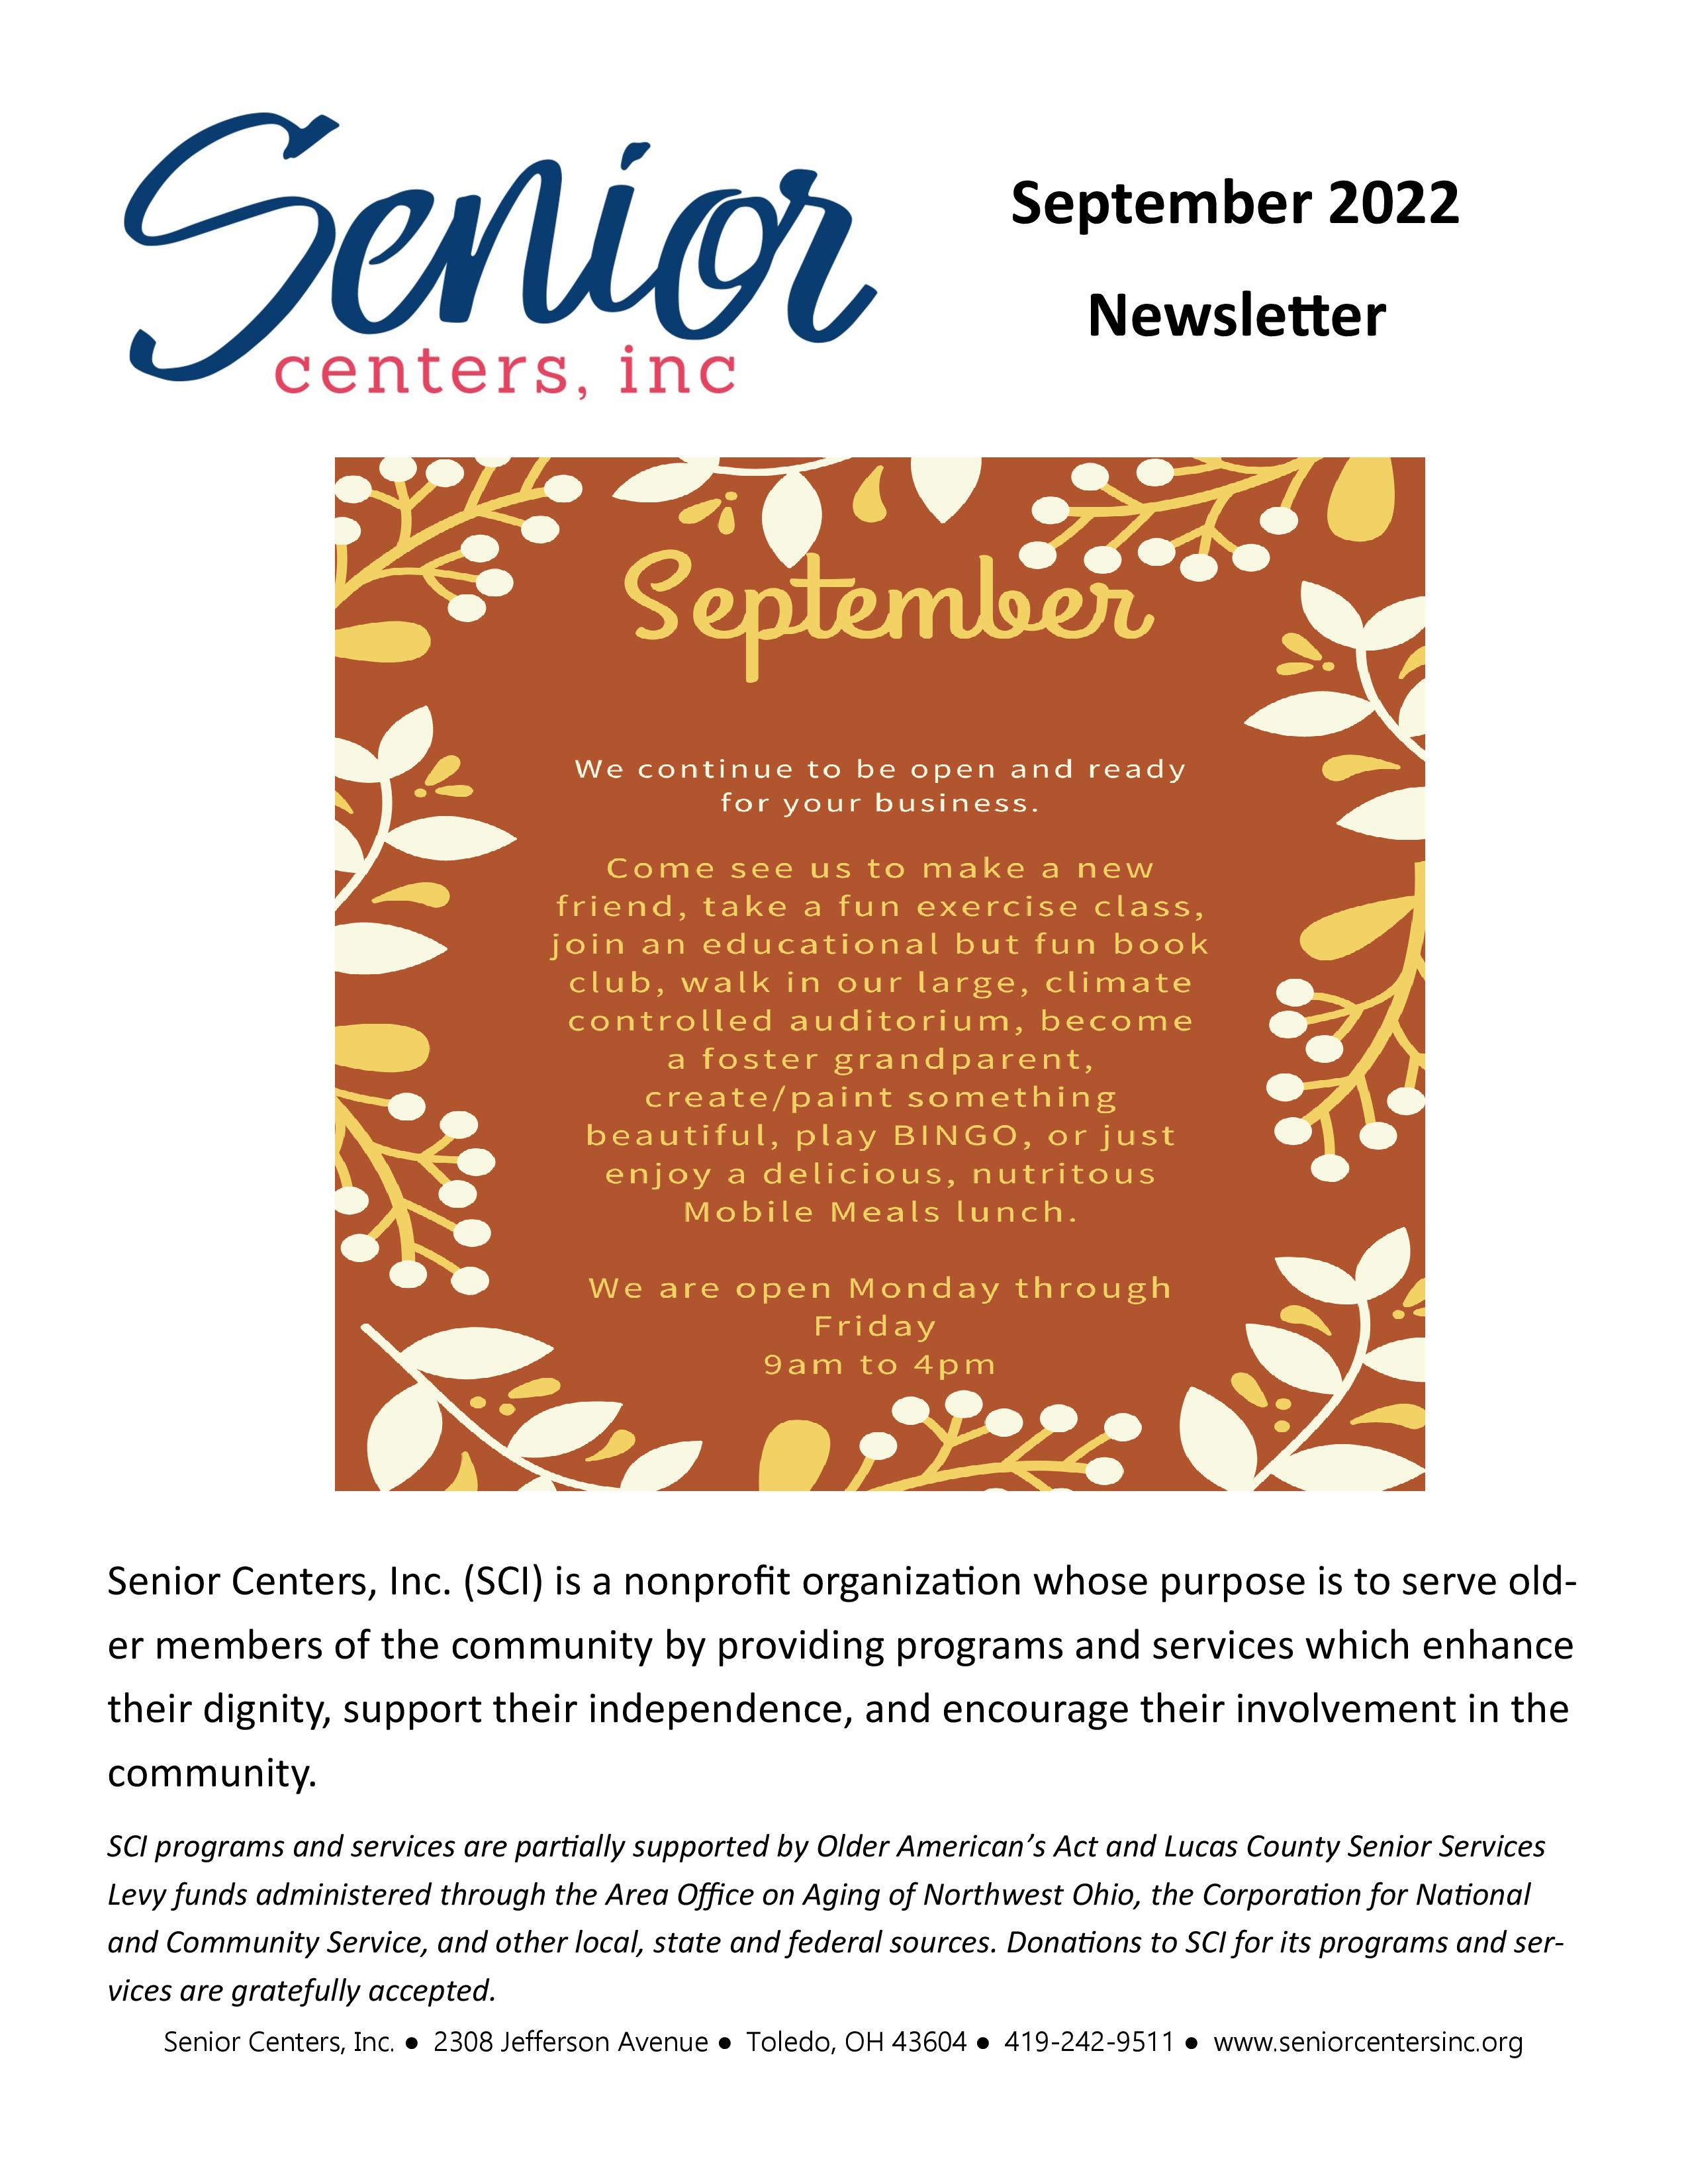 September 2022 Newsletter and Activity Calendar – Senior Centers, Inc.